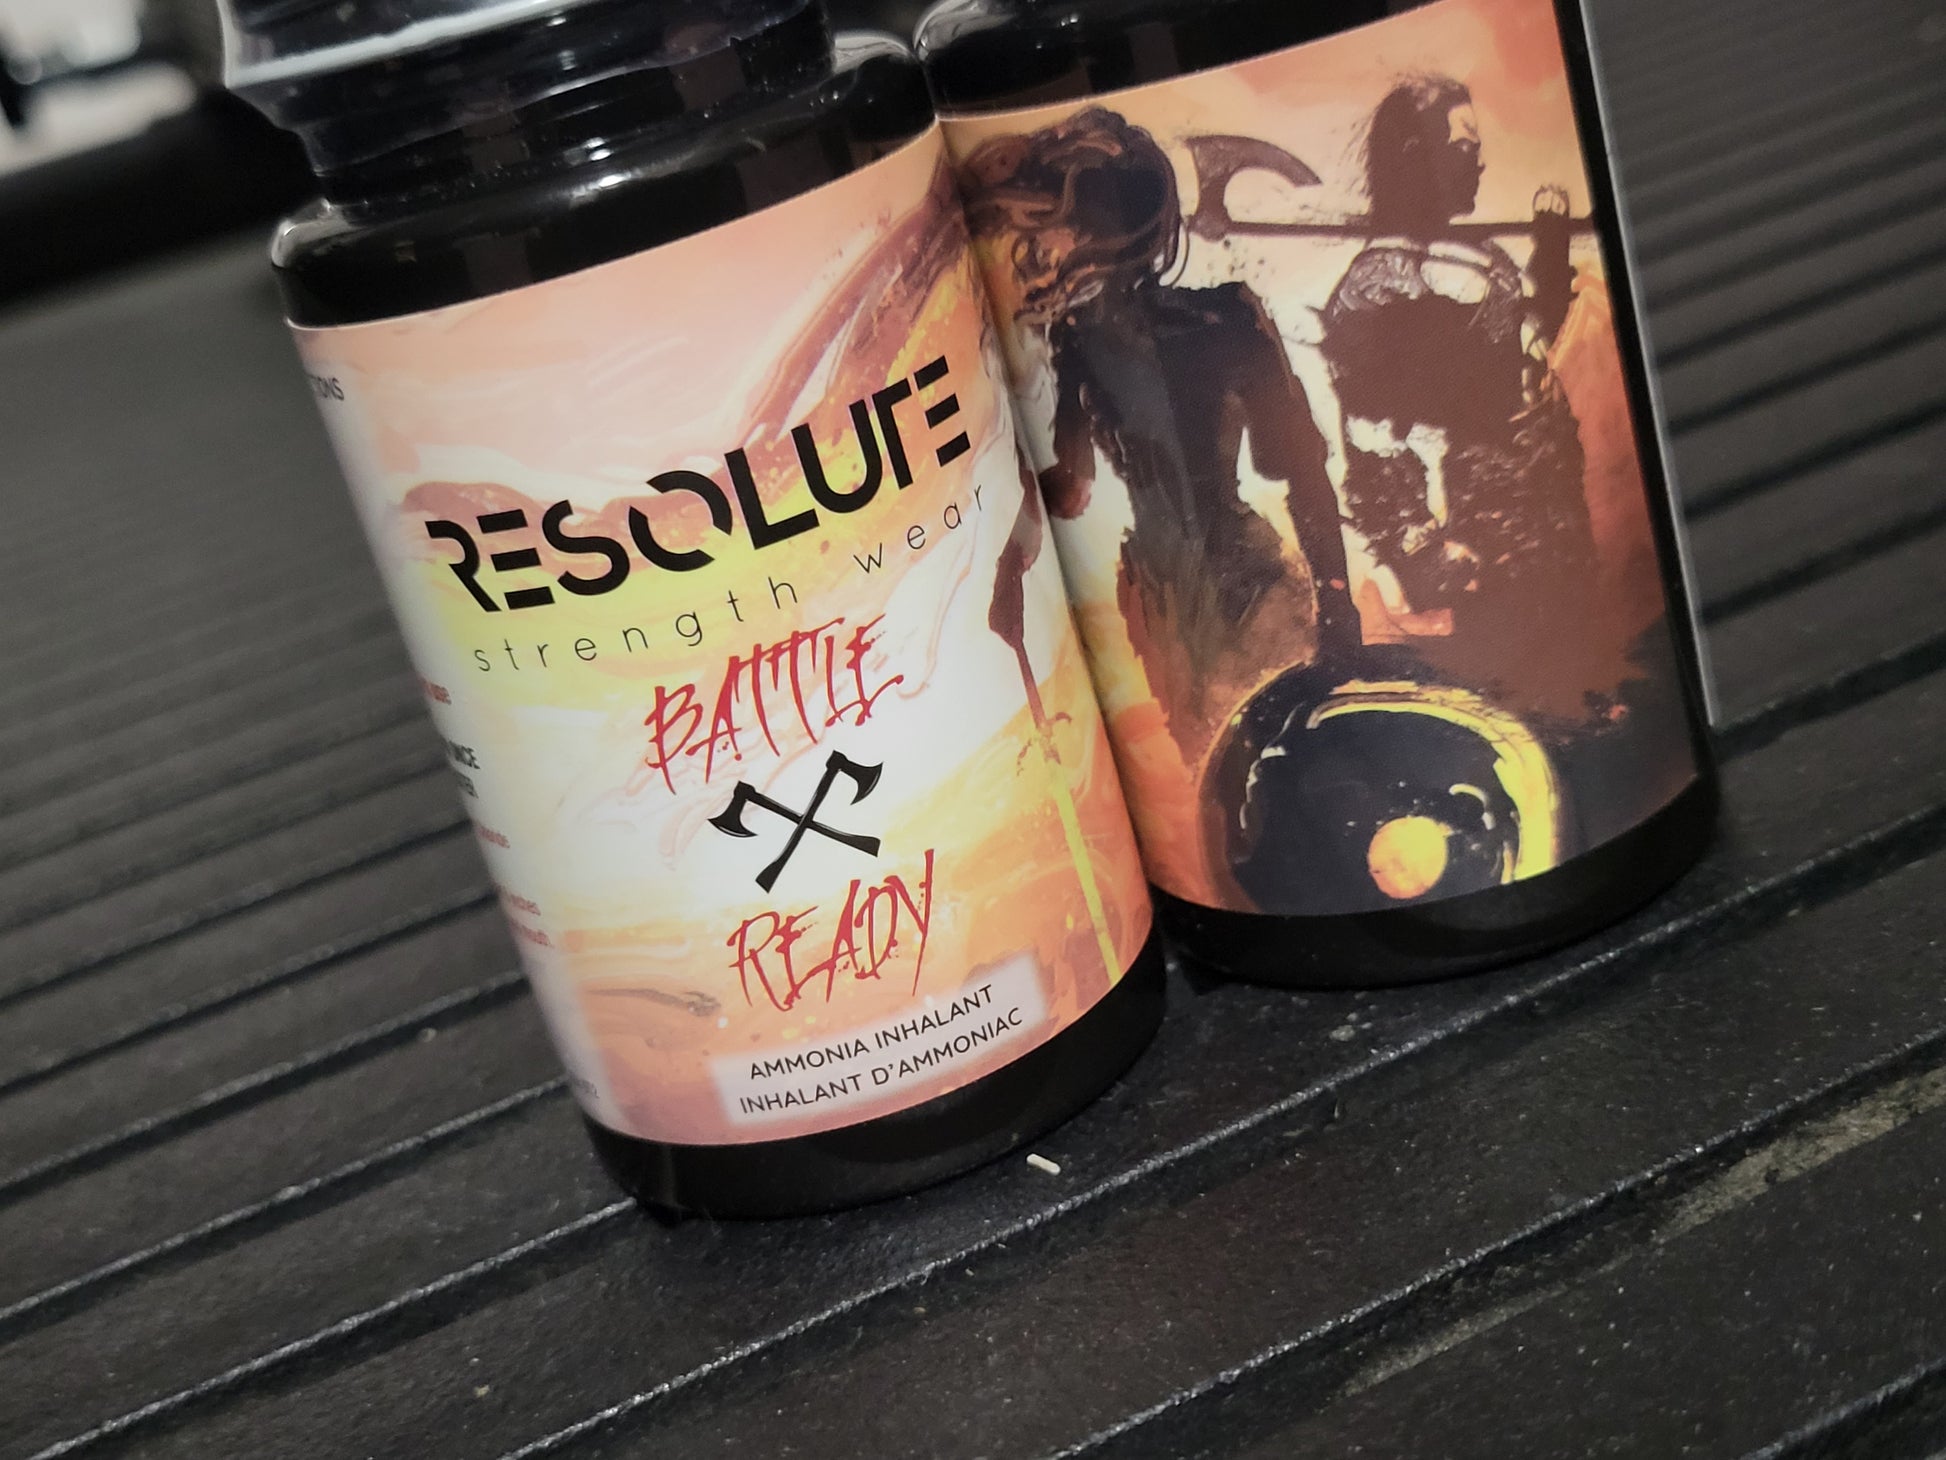 Battle Ready Smelling Salts - Resolute Strength Wear